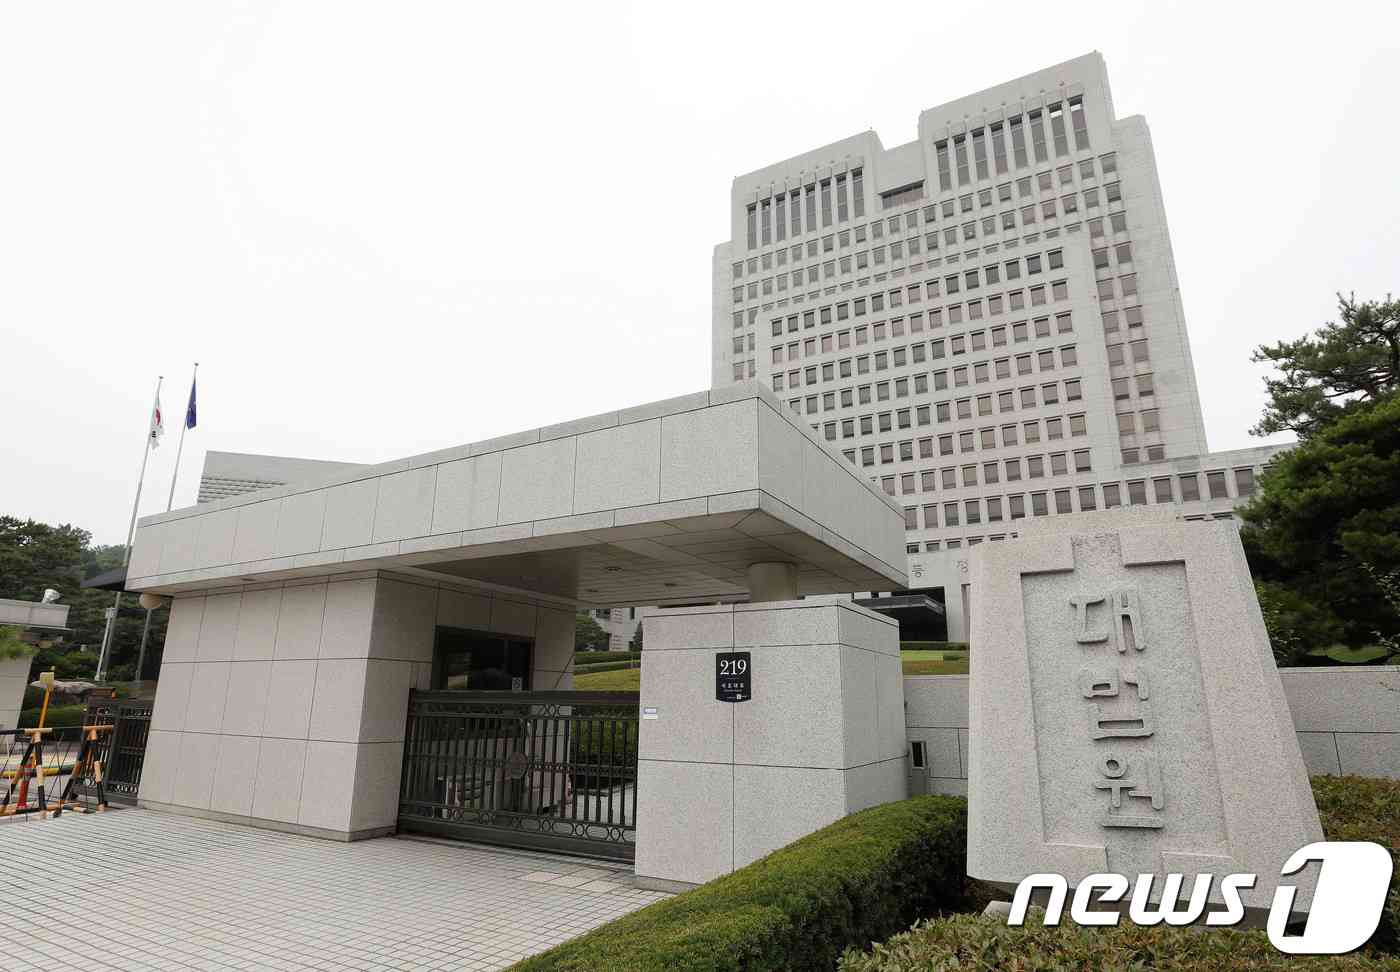 서울 서초구 대법원. © News1